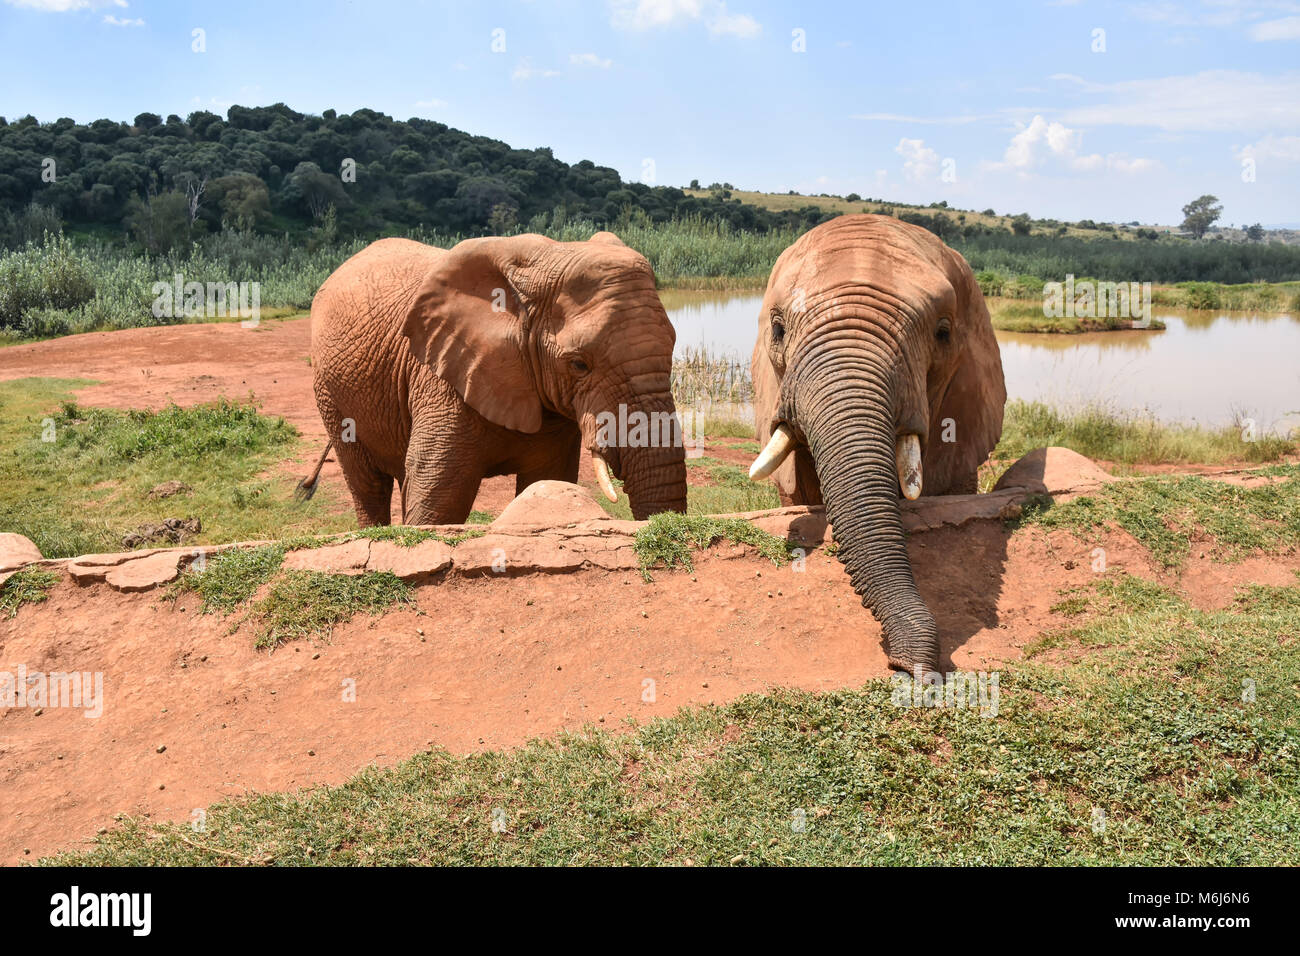 Gli elefanti nel Magaliesberg montagna vicino a Johannesburg e Pretoria in Sud Africa snacking sulla tratta fornito da park rangers Foto Stock